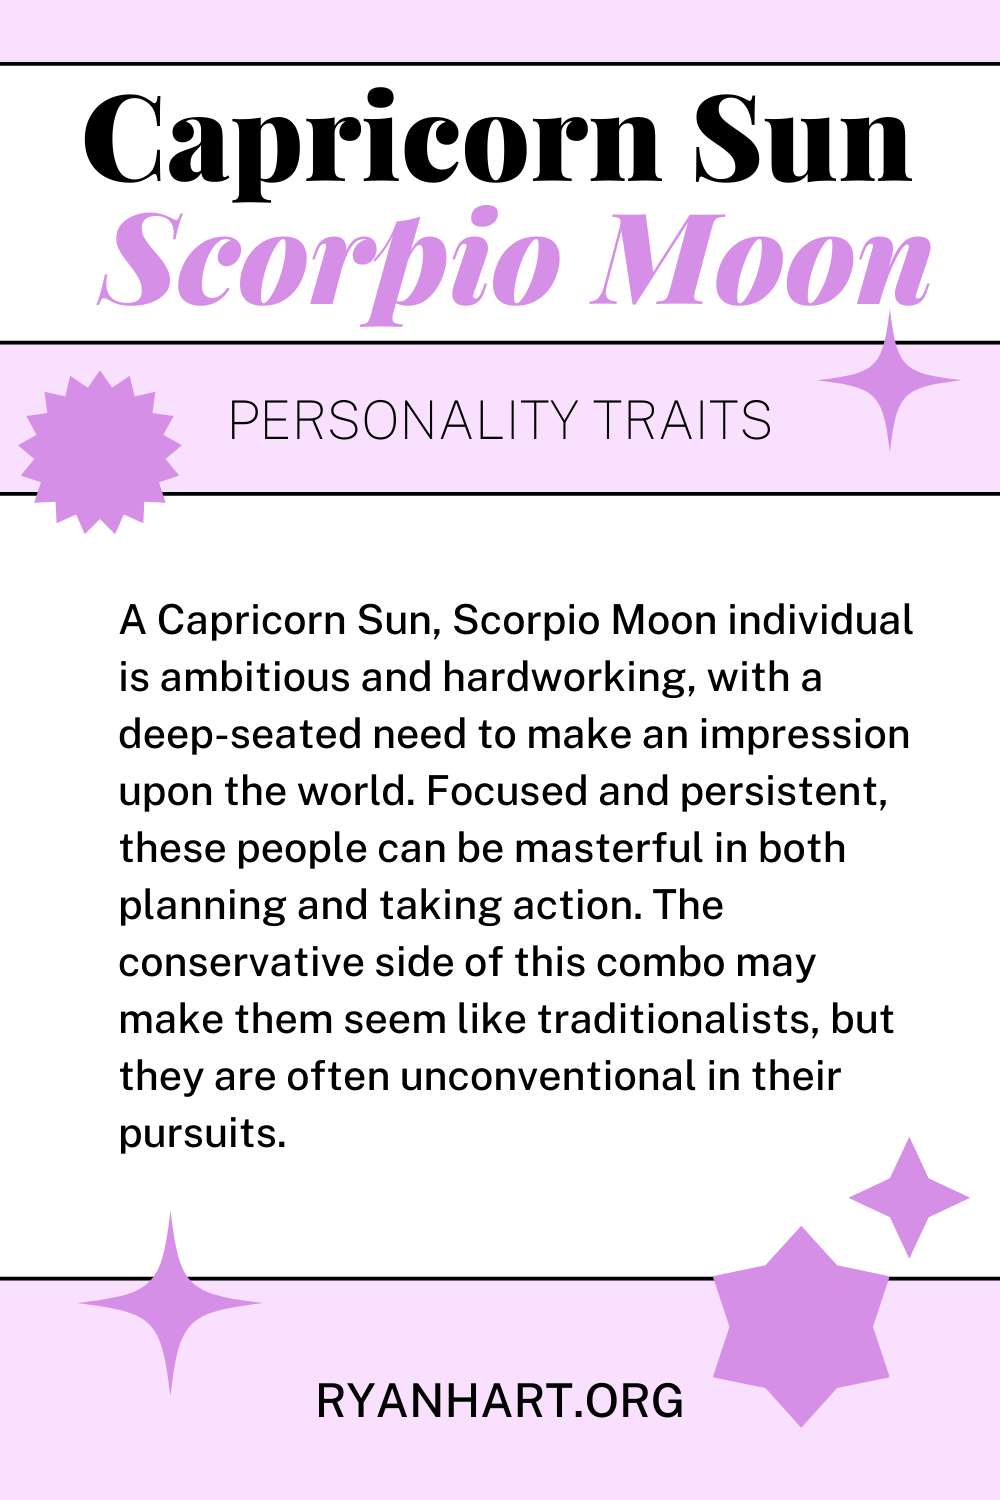 Capricorn Sun Scorpio Moon Description